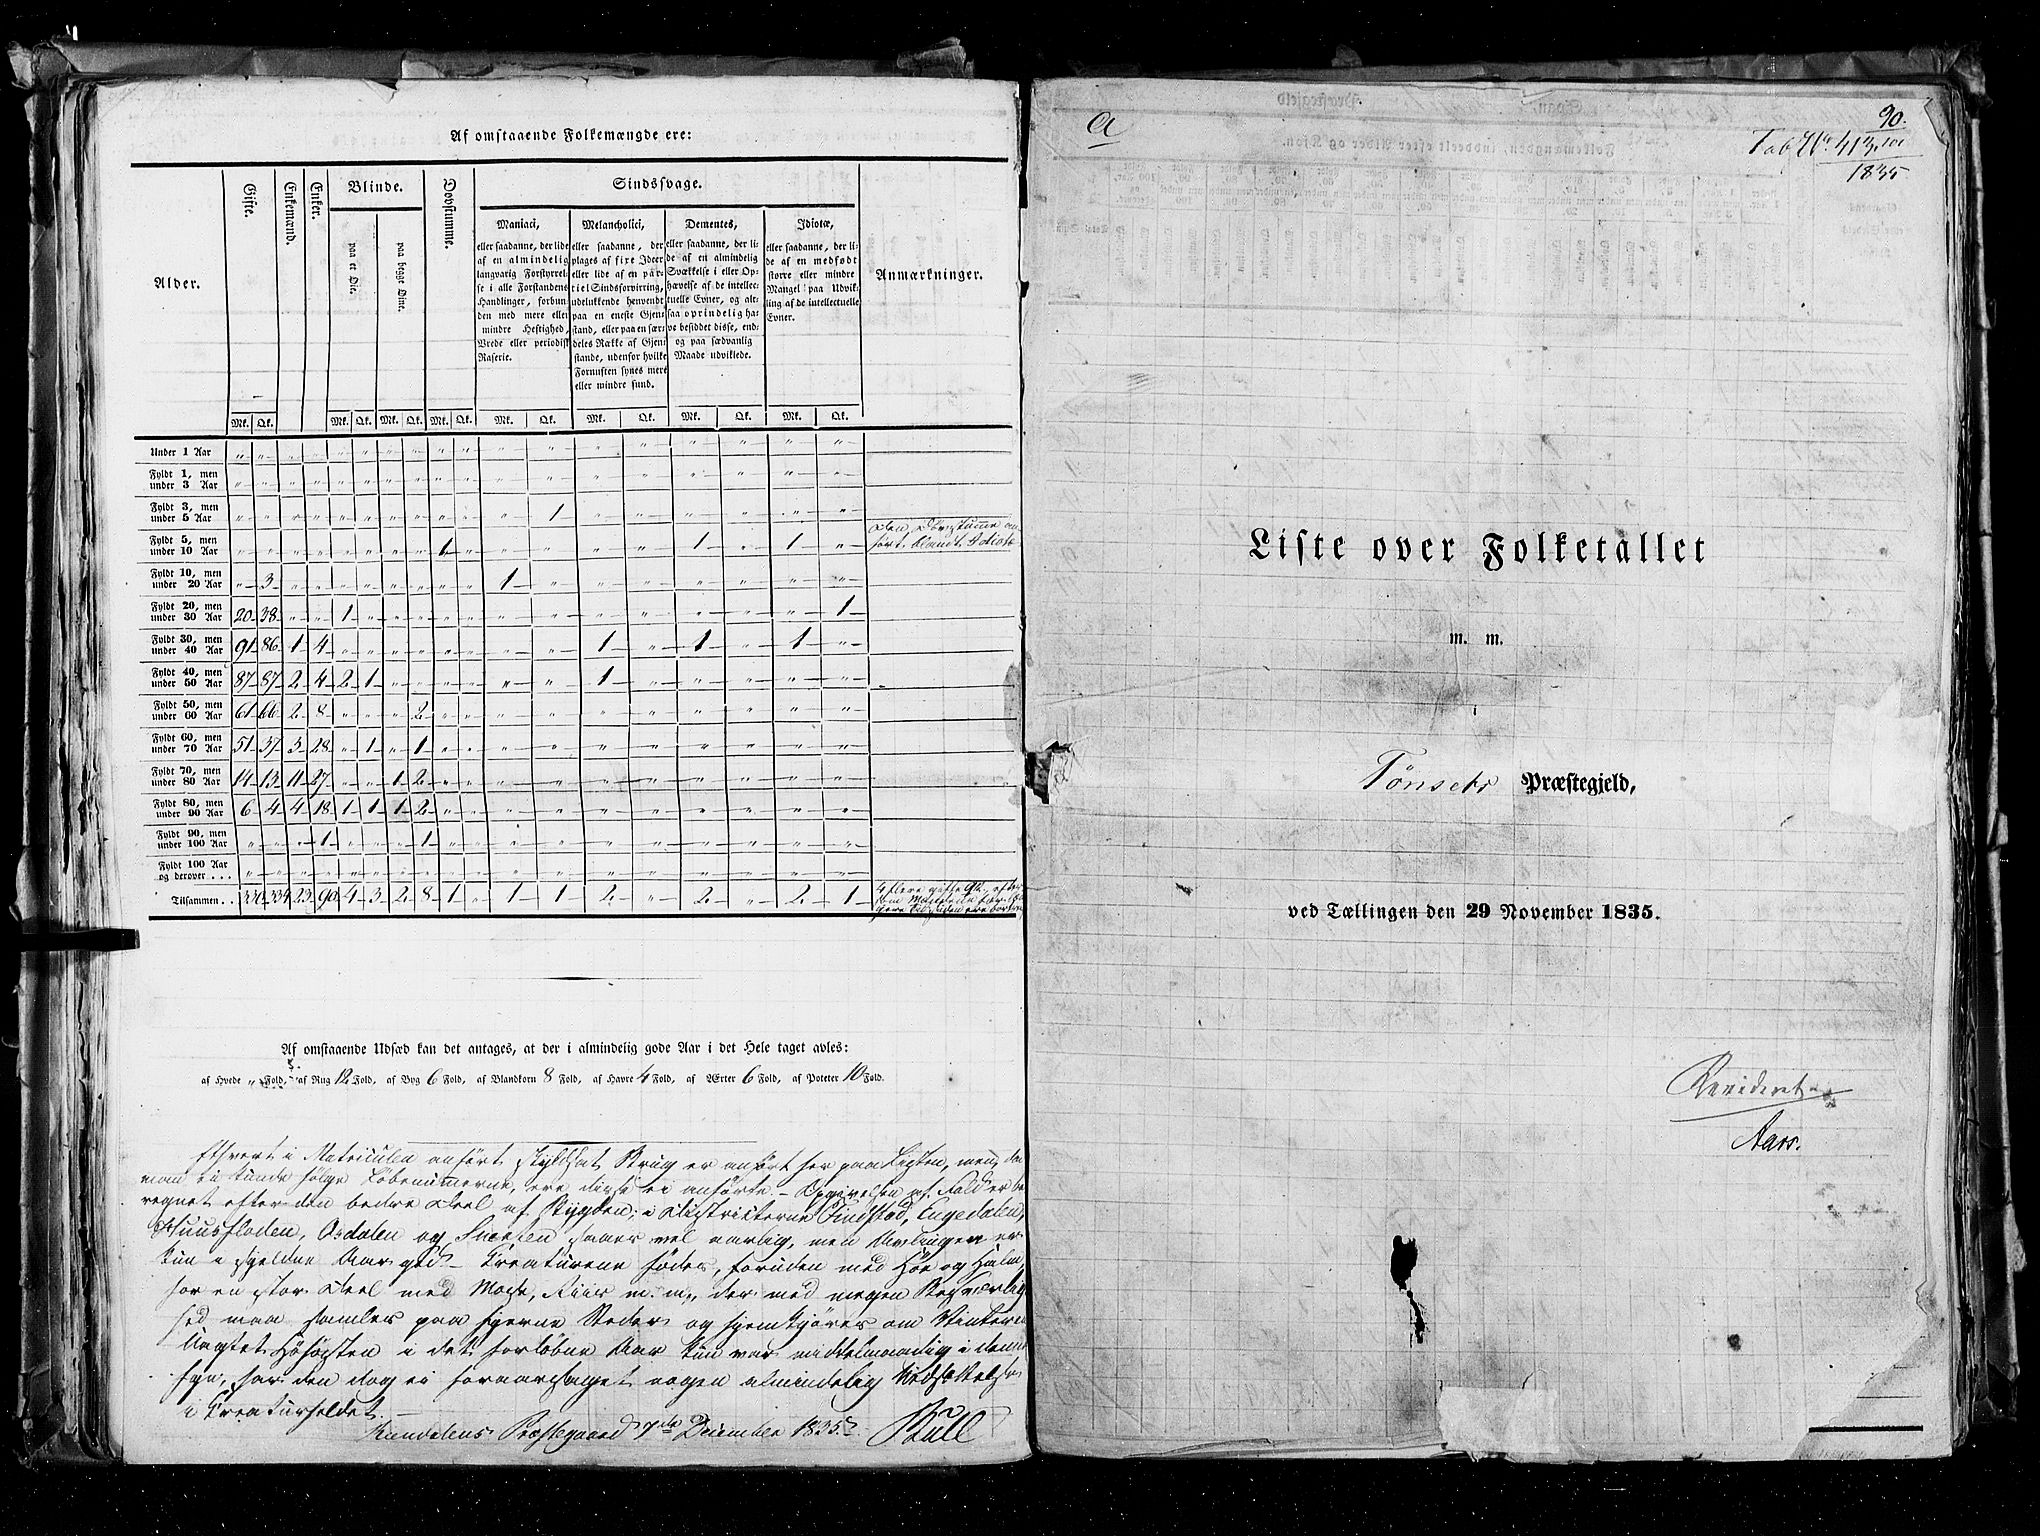 RA, Census 1835, vol. 3: Hedemarken amt og Kristians amt, 1835, p. 90